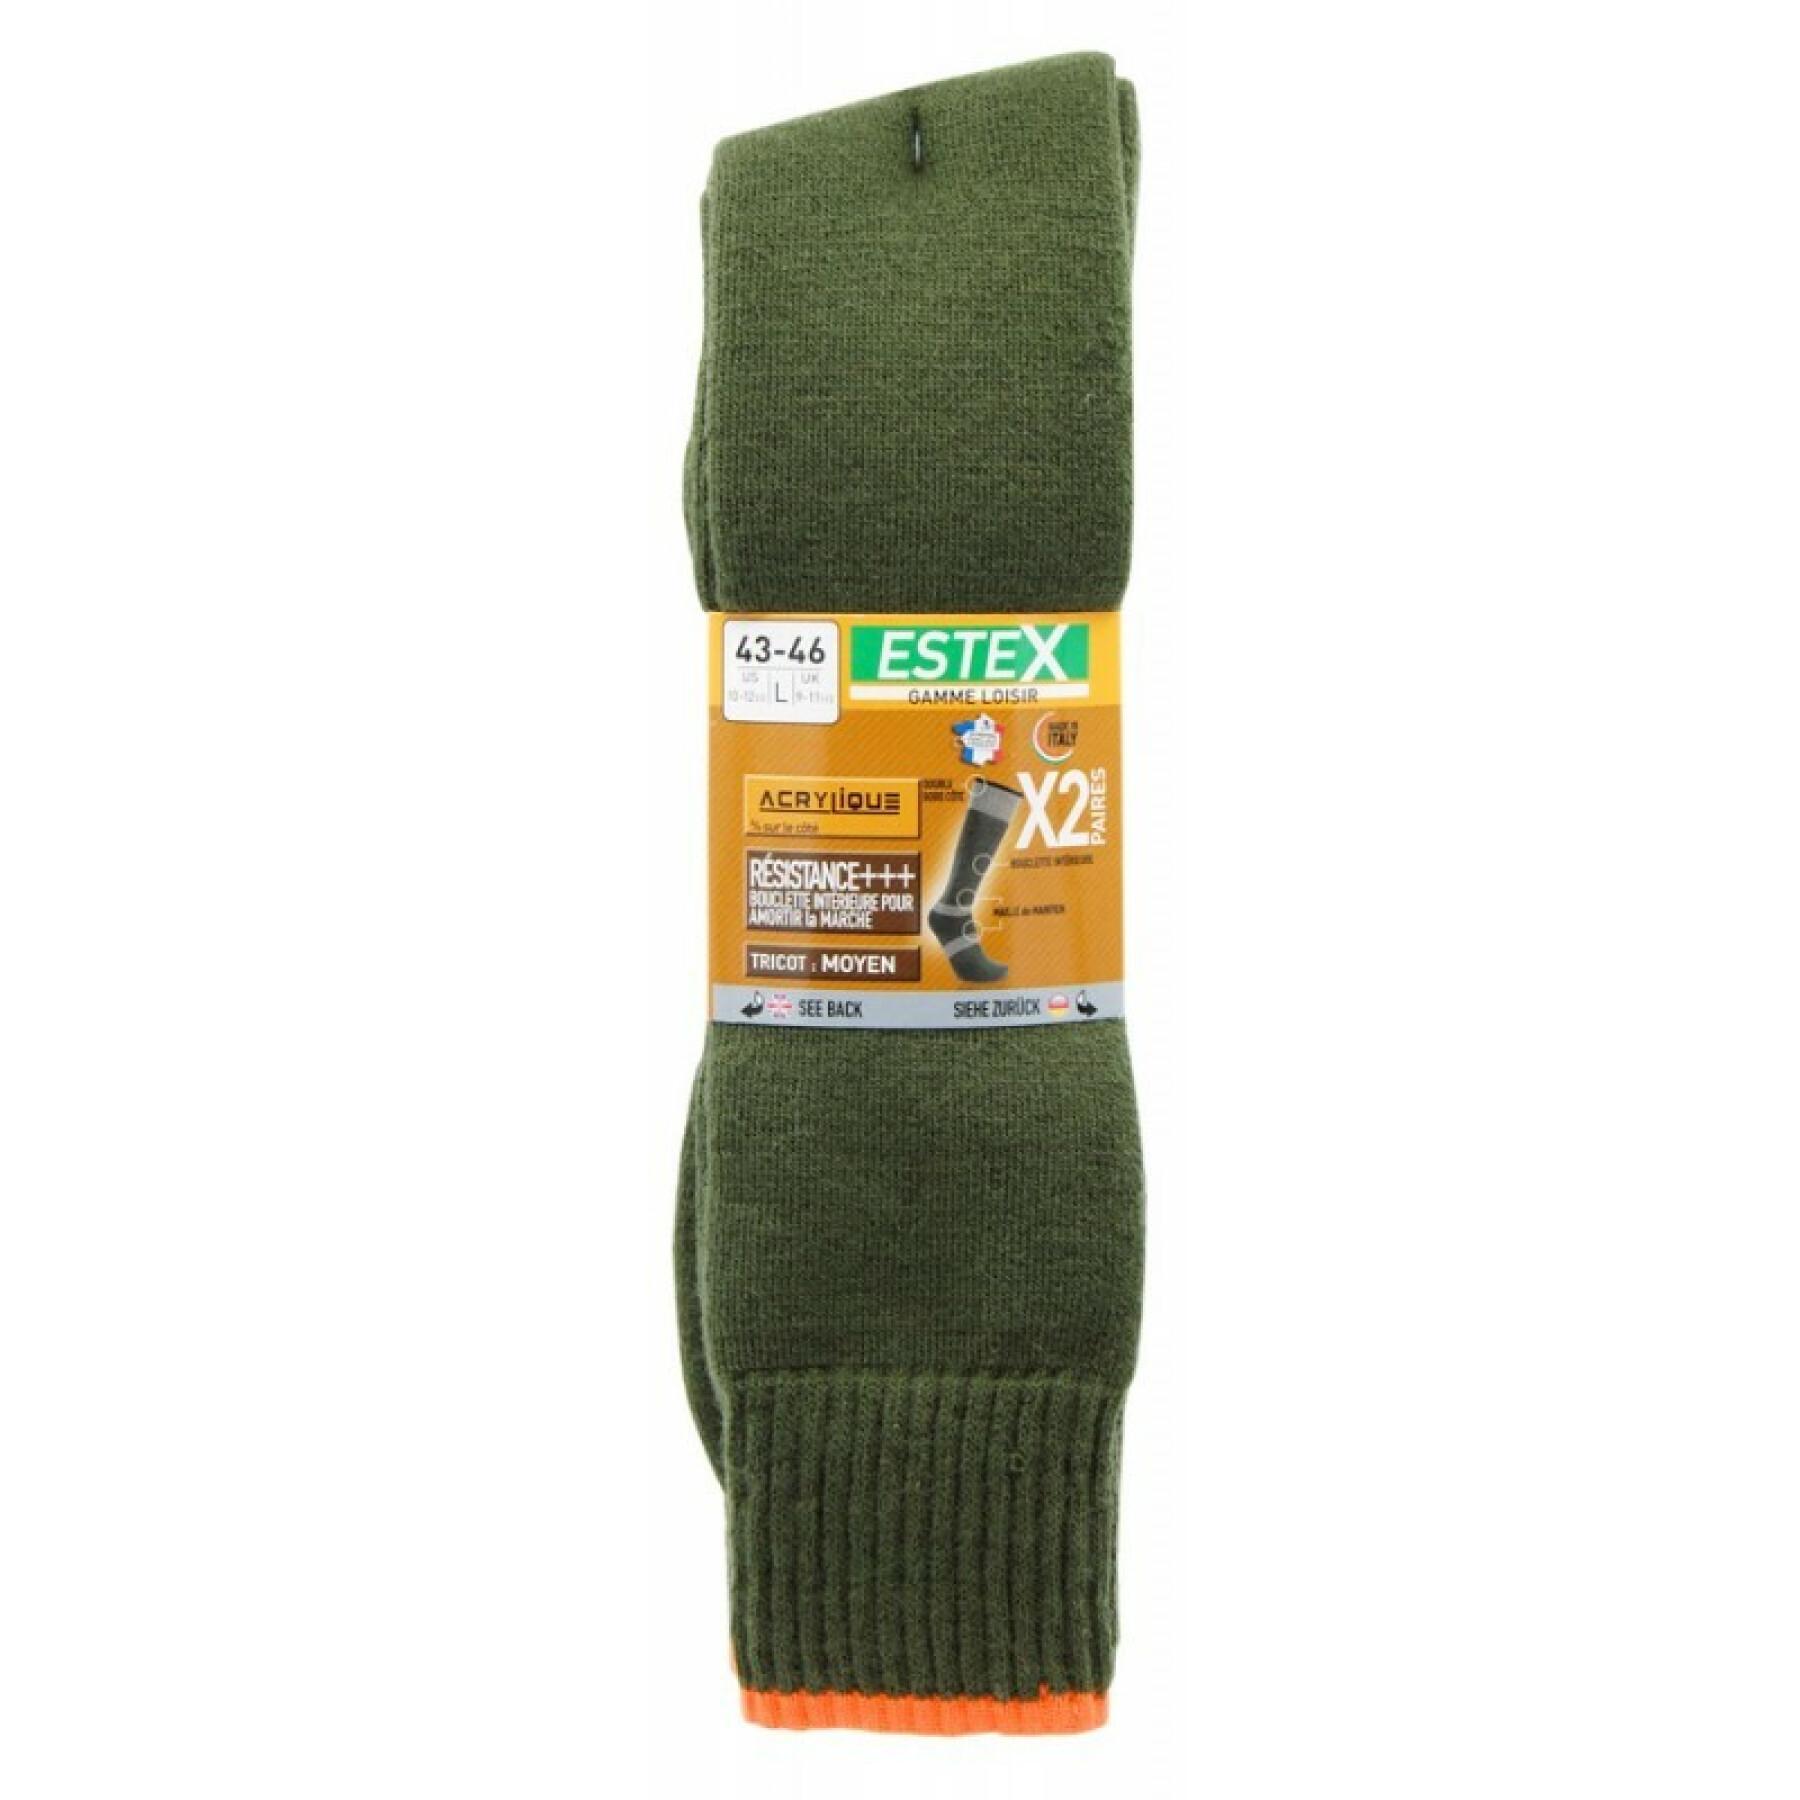 Pair of socks Estex Picardie